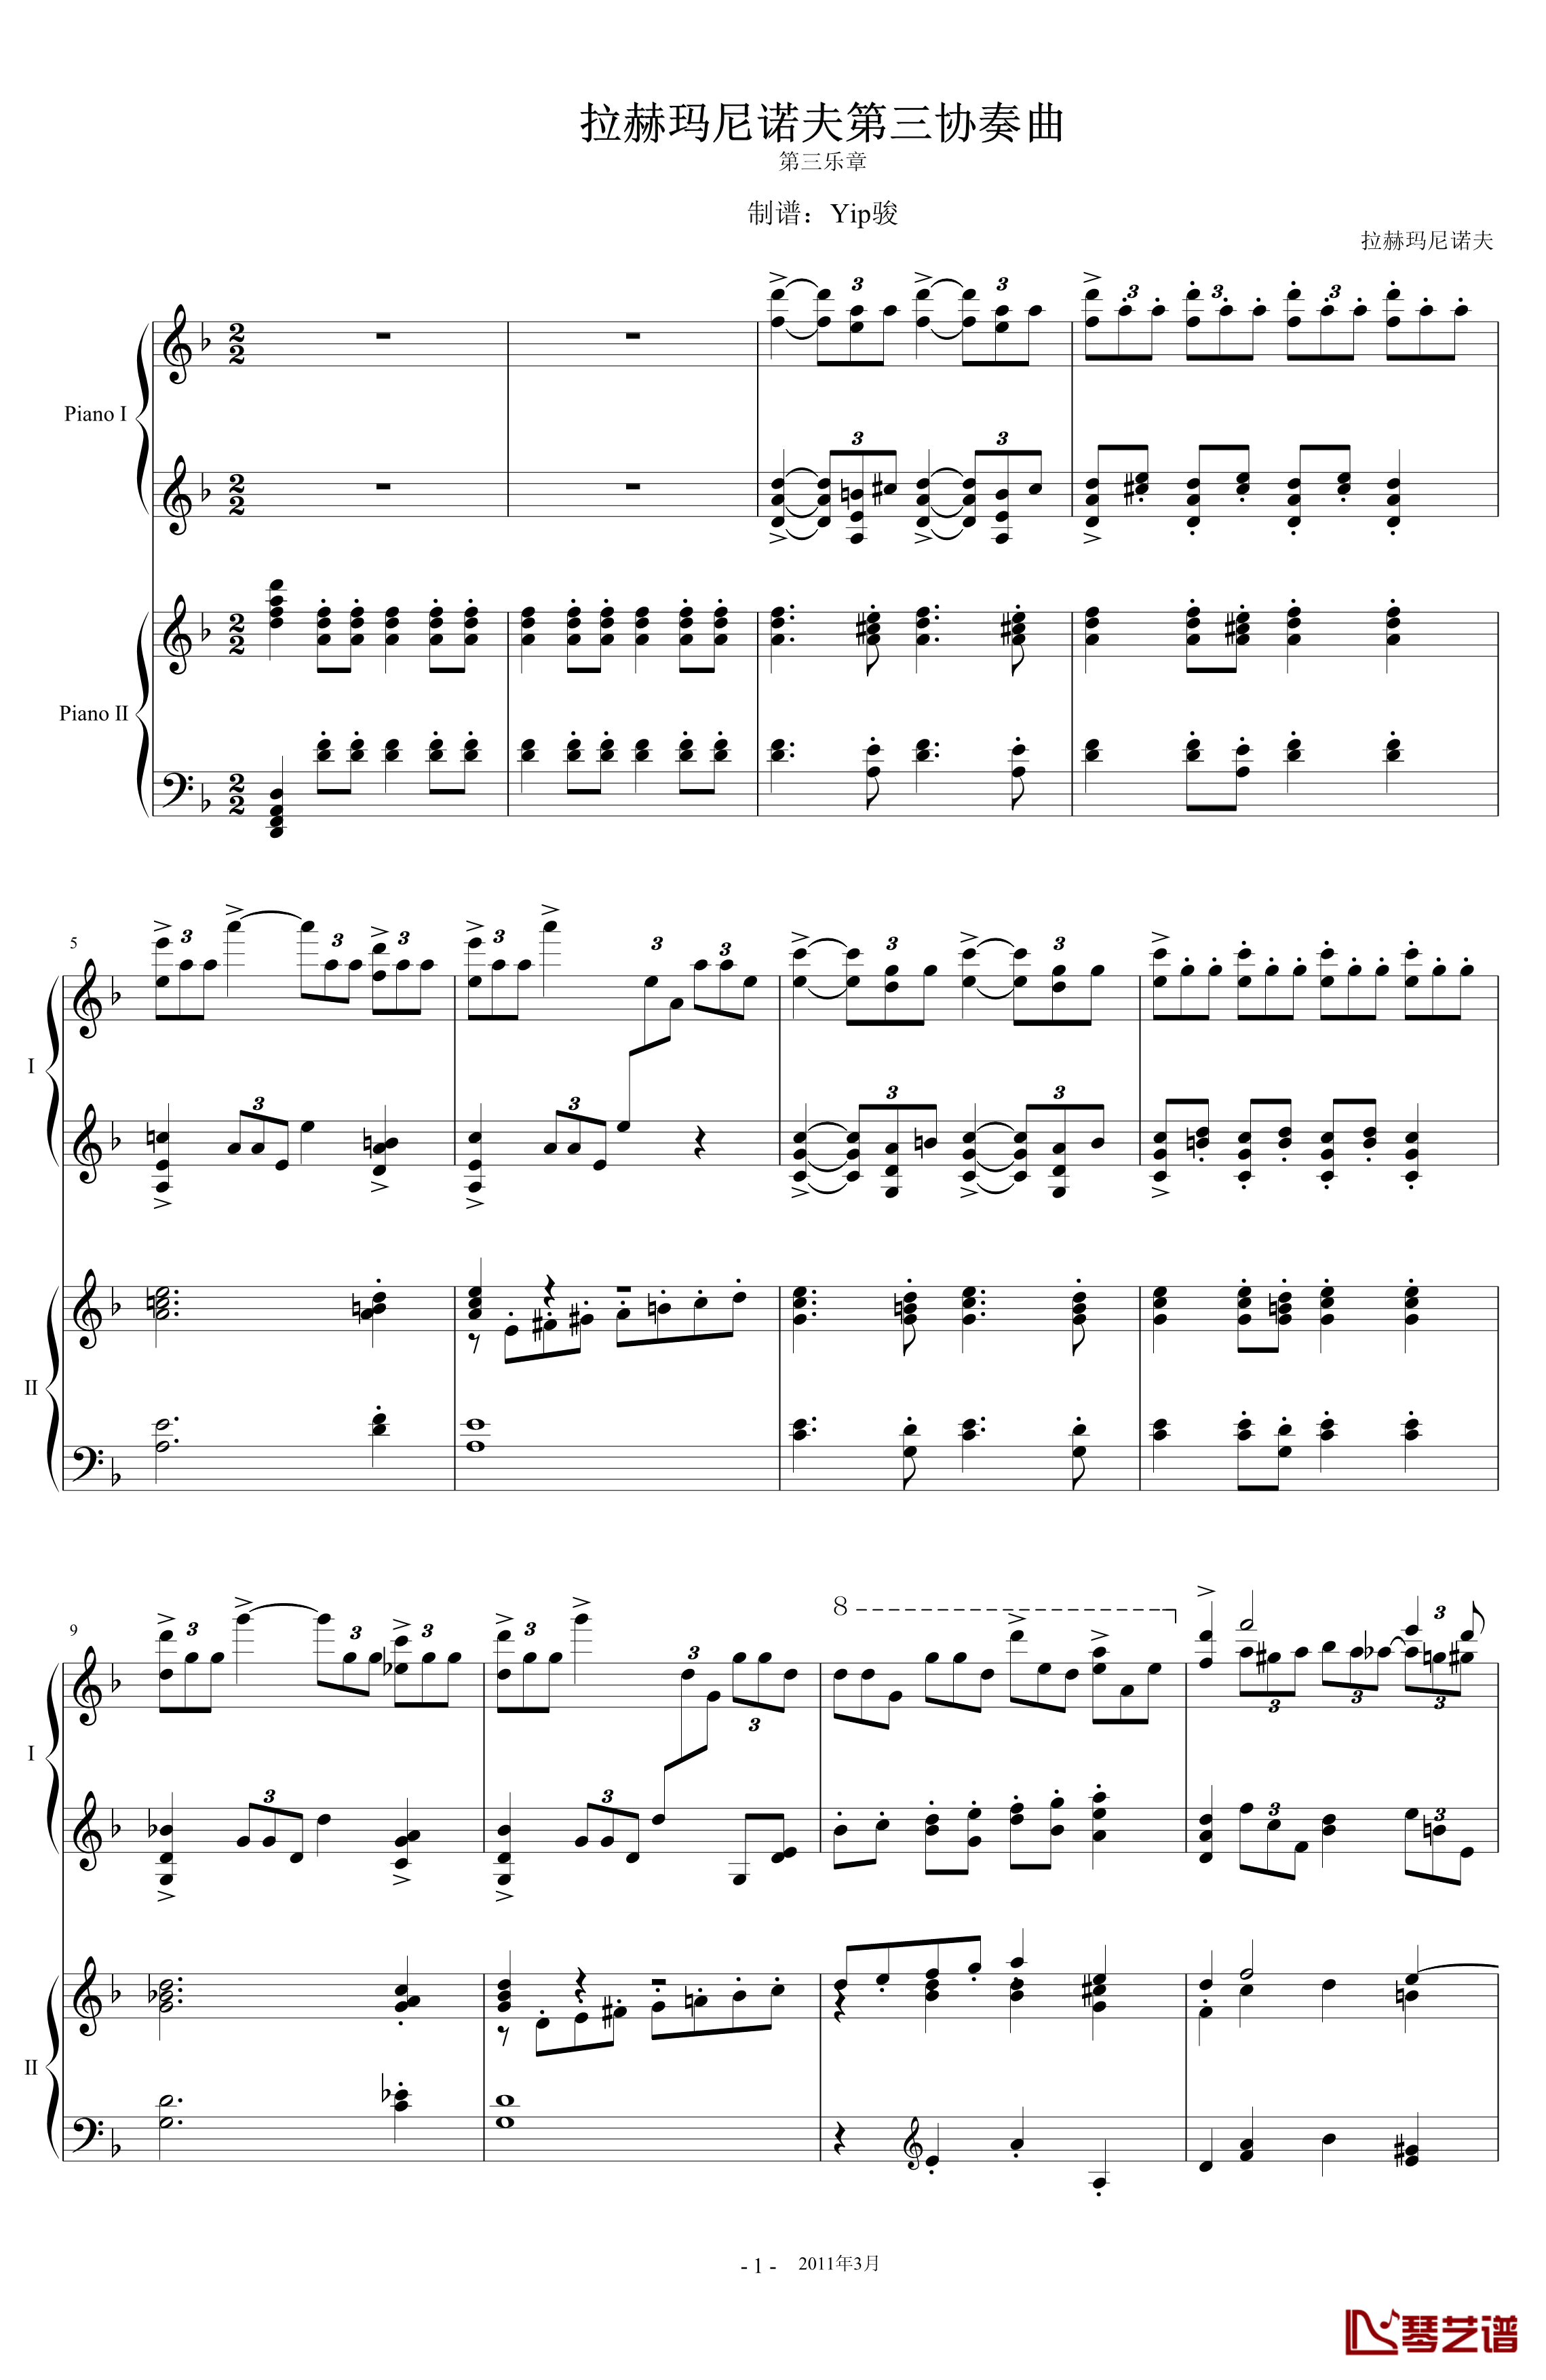 拉三第三乐章41页双钢琴钢琴谱-最难钢琴曲-拉赫马尼若夫1